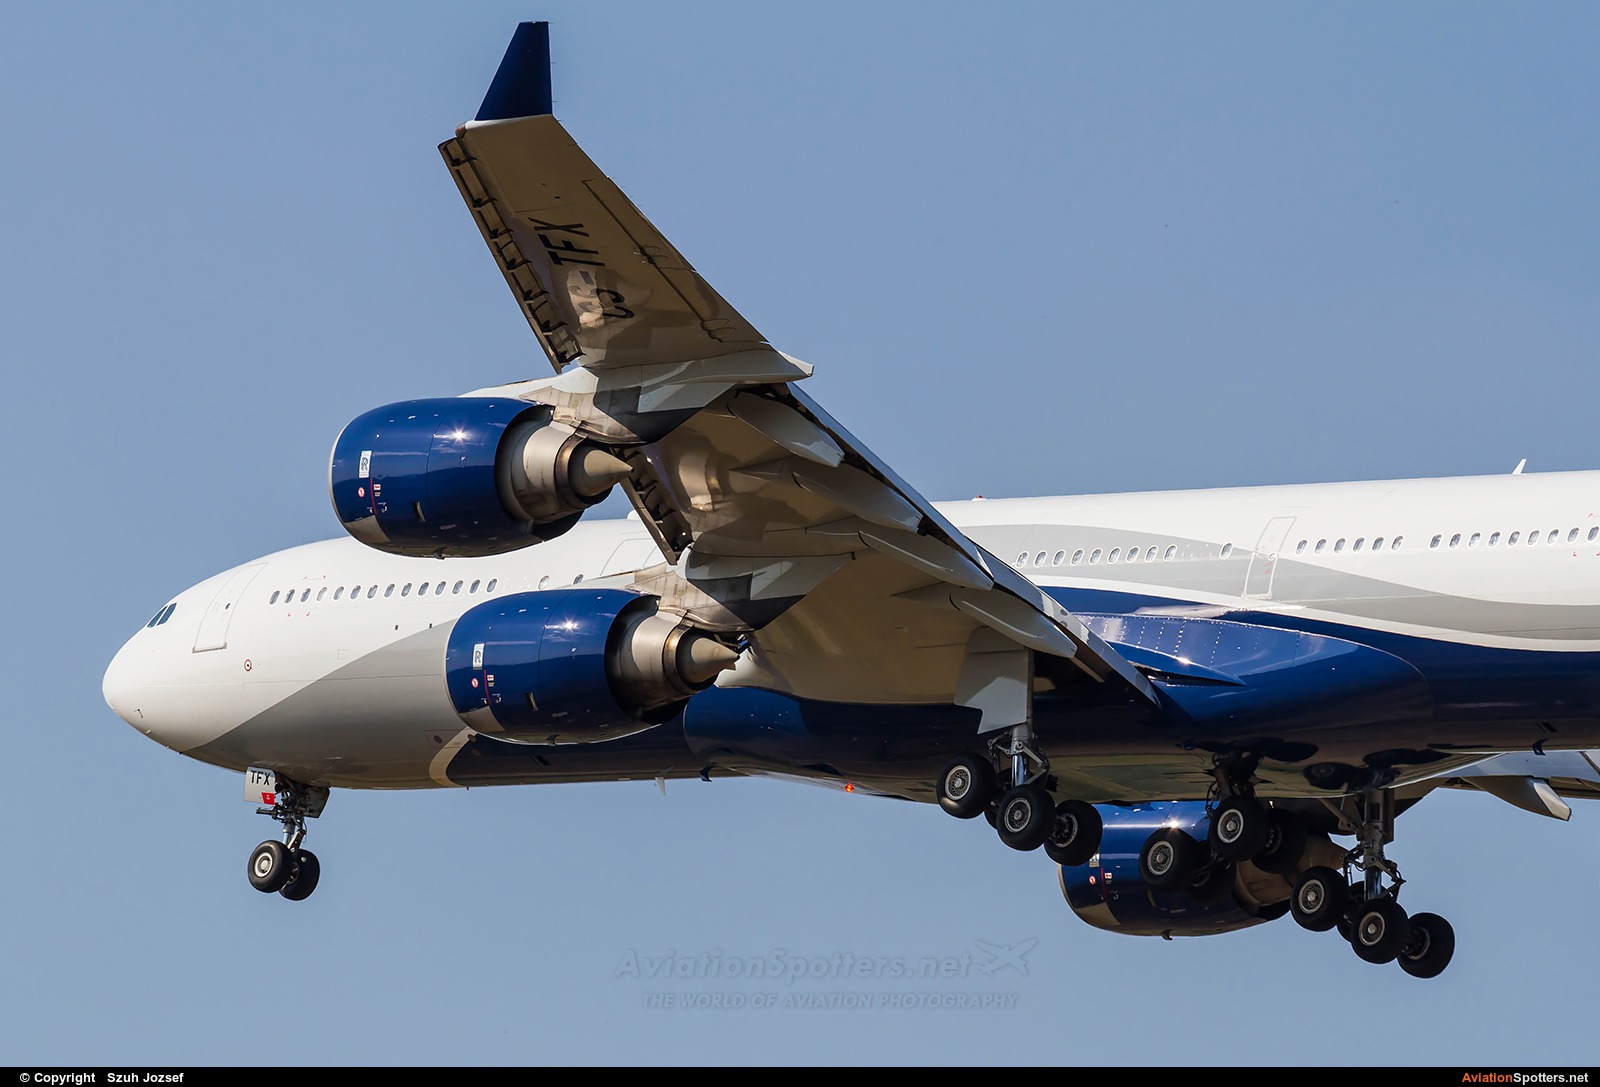 Hi Fly  -  A340-500  (CS-TFX) By Szuh Jozsef (szuh jozsef)